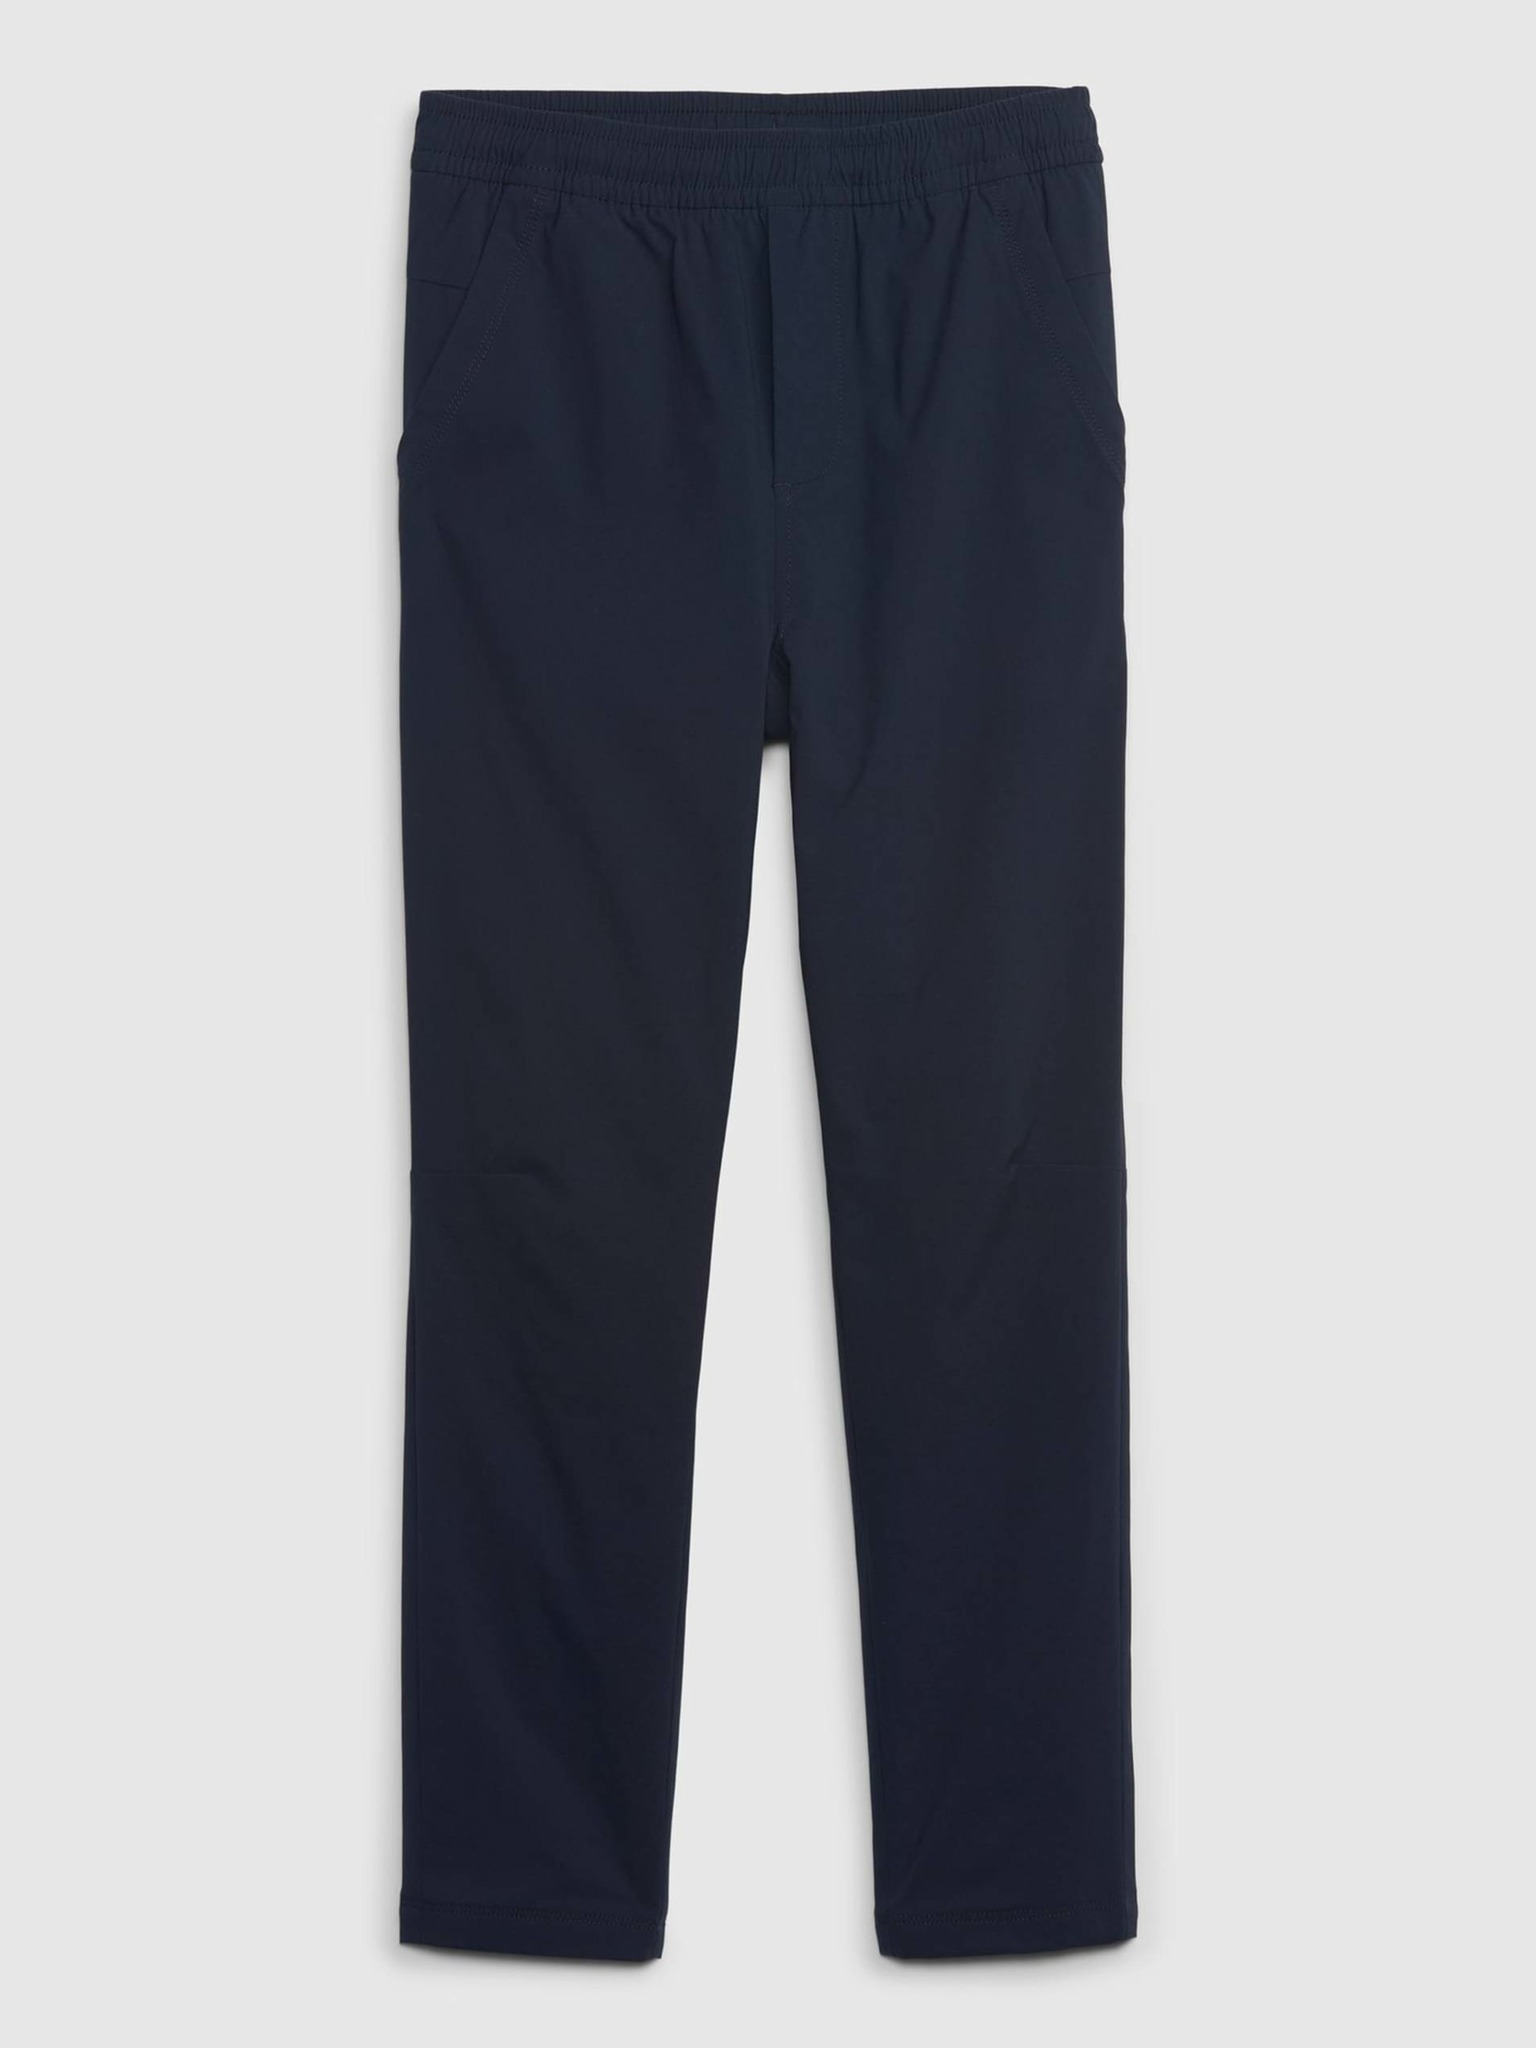 Fotografie Tmavě modré klučičí kalhoty zateplené GAP - 160-162